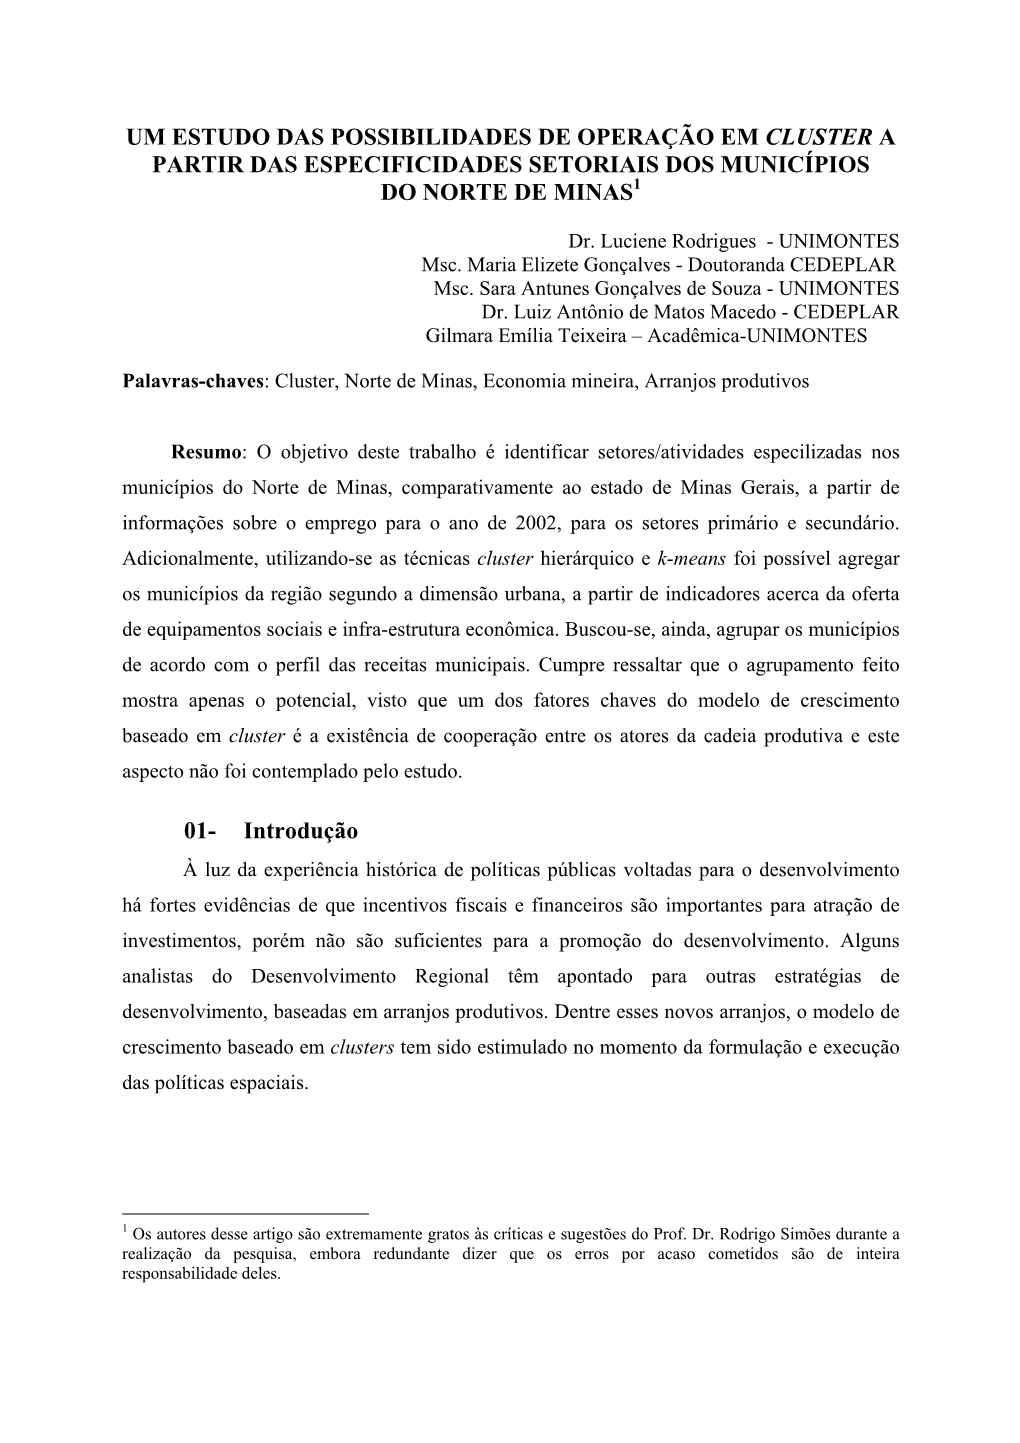 Um Estudo Das Possibilidades De Operação Em Cluster a Partir Das Especificidades Setoriais Dos Municípios Do Norte De Minas1